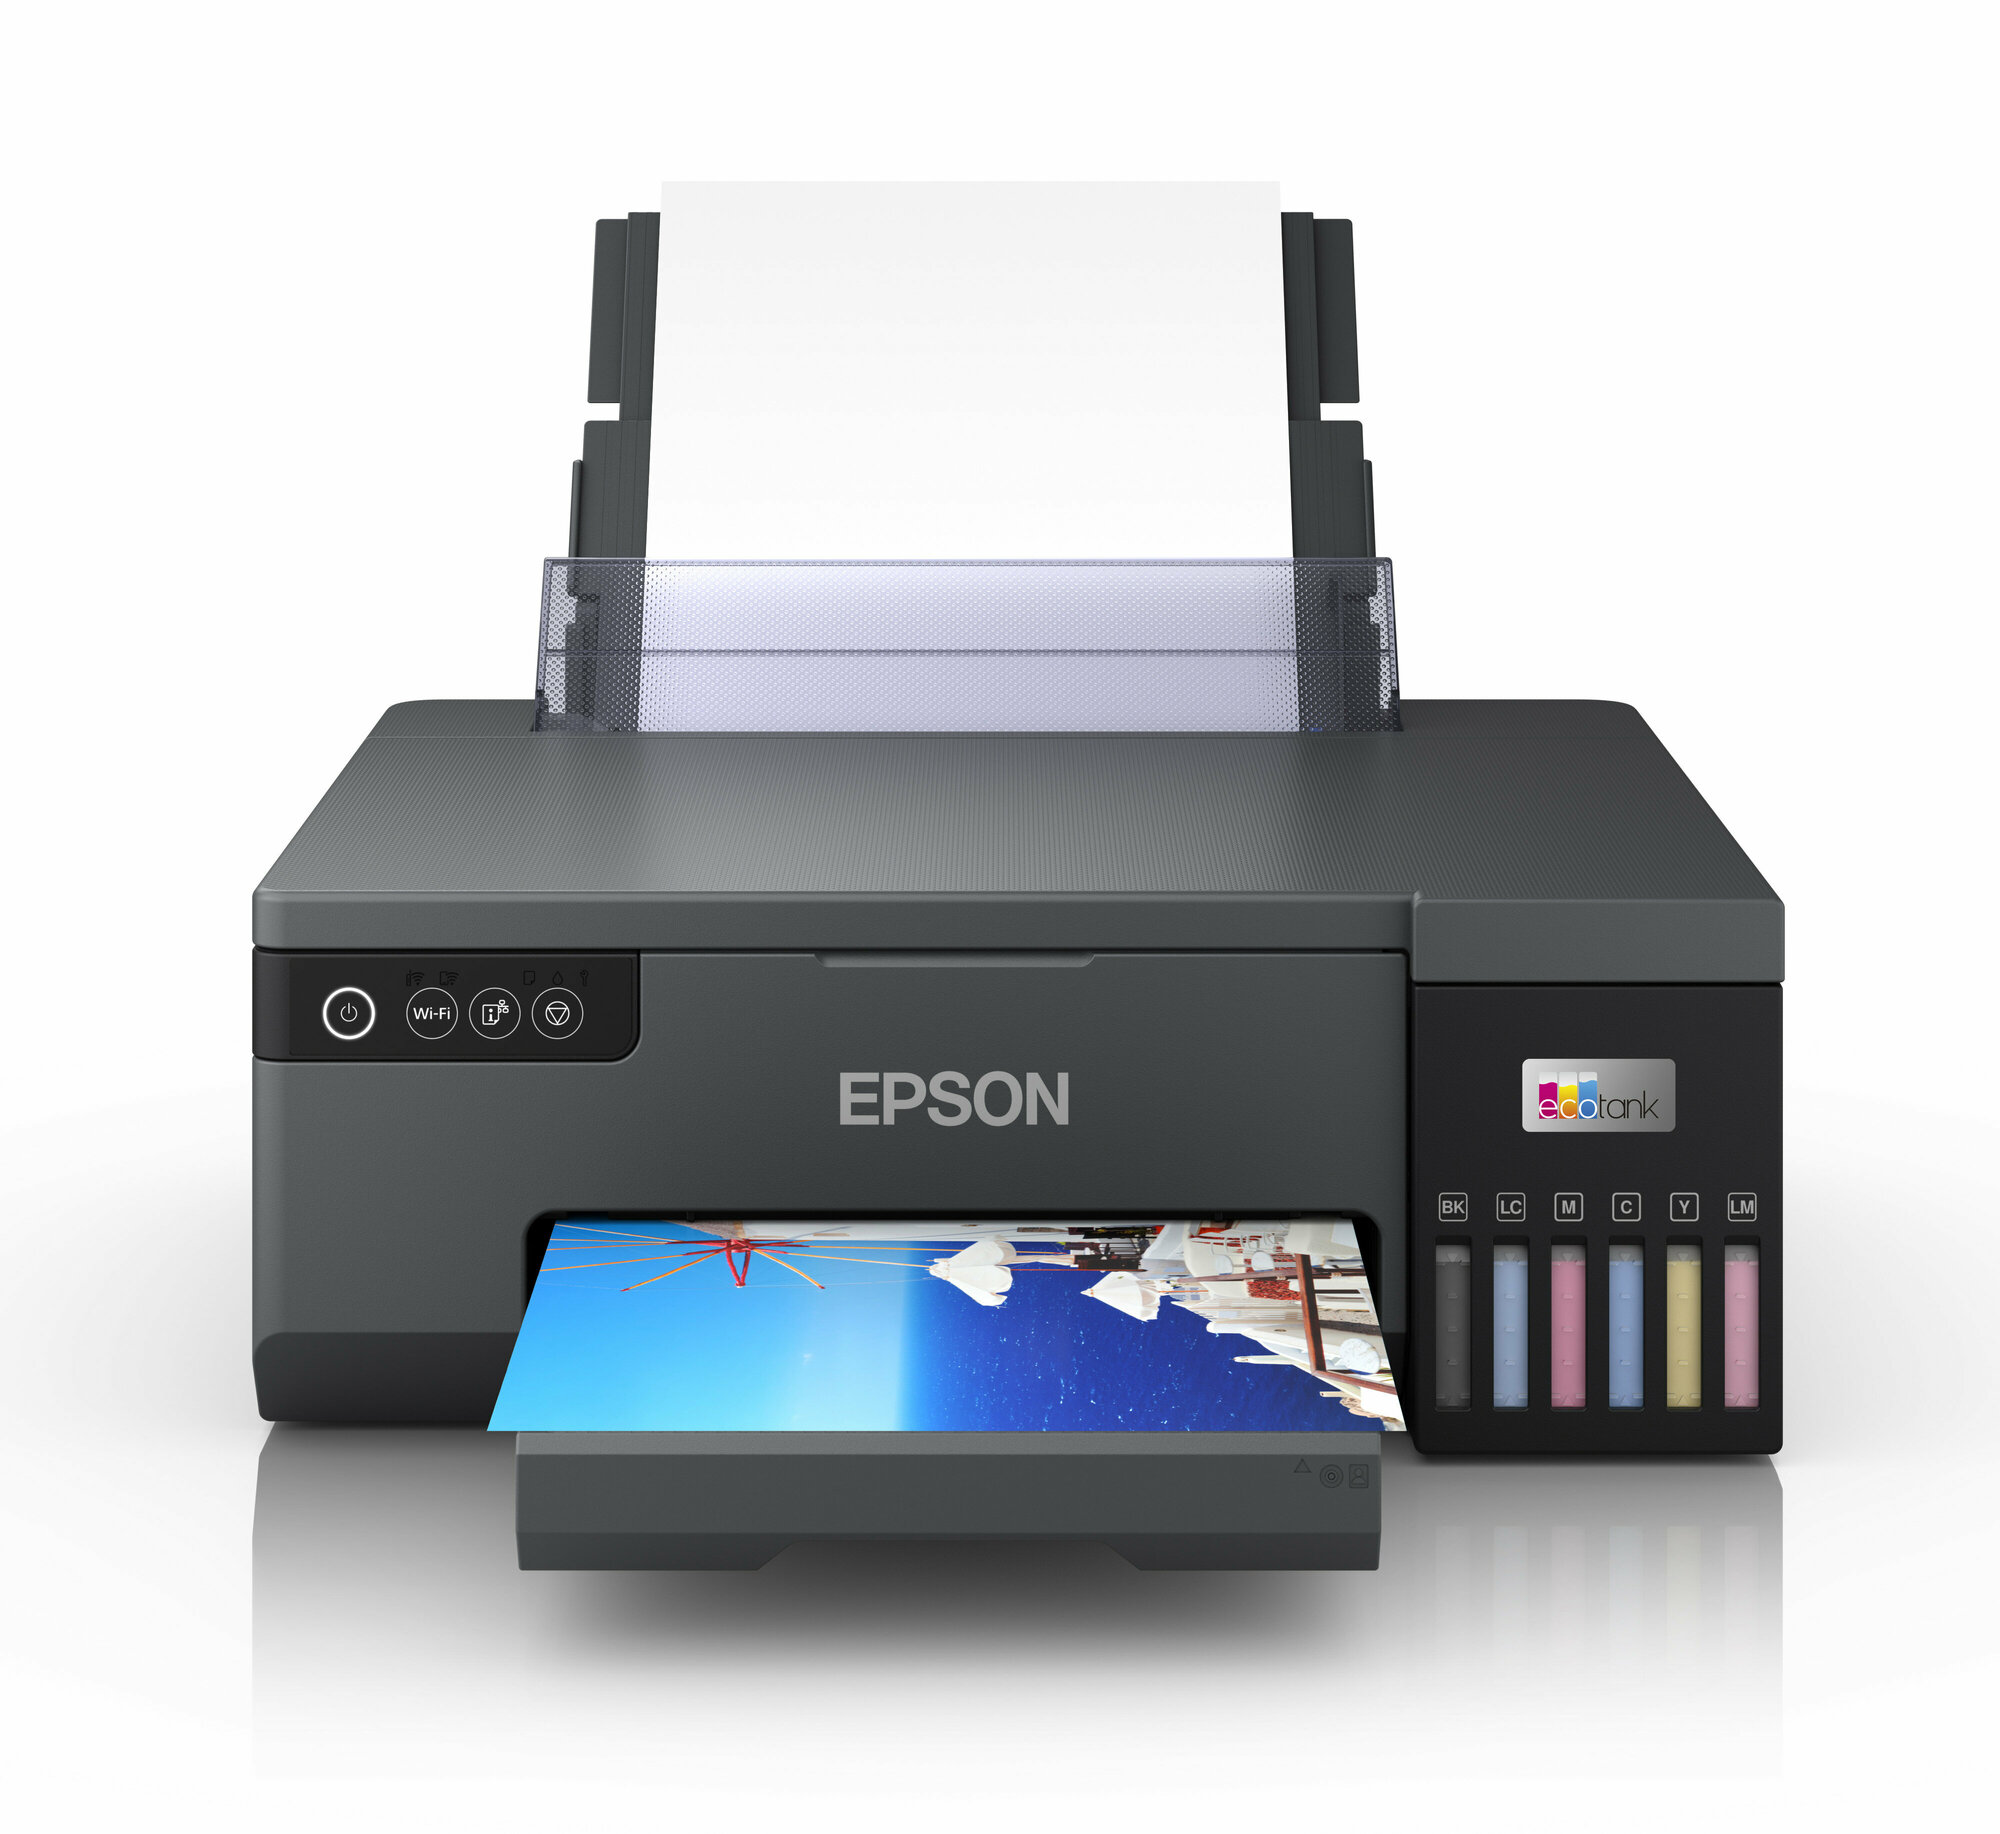 Принтер струйный Epson L8050 цветн A4 черный